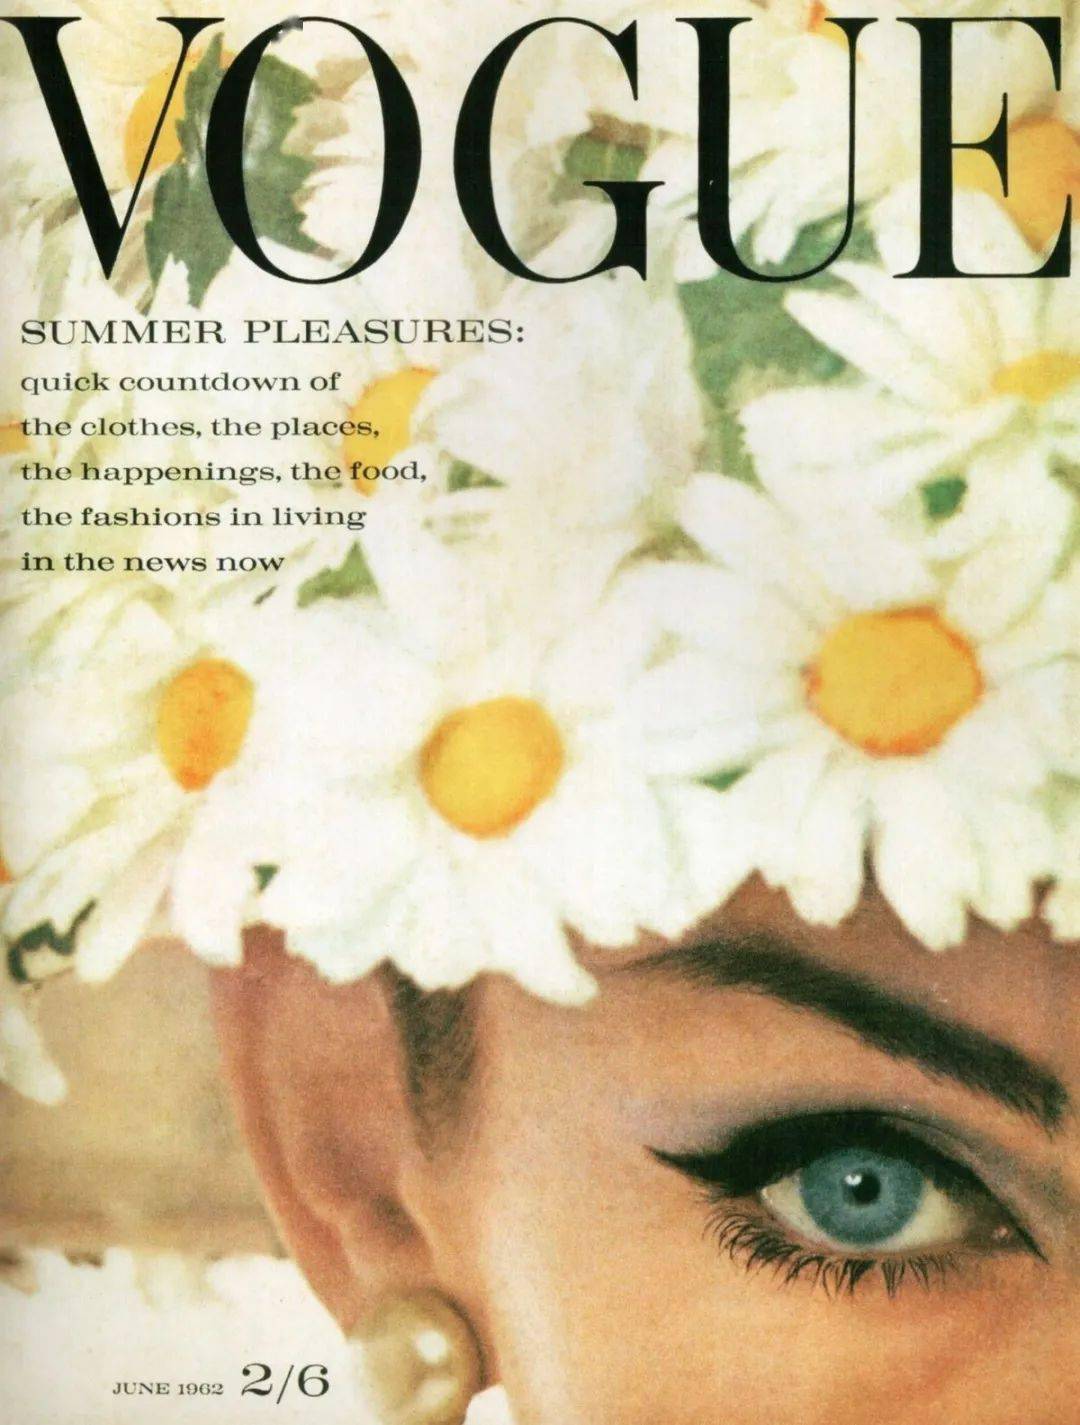 时尚圣经《vogue》史上最经典的30个封面,每一张都是跨越时代的美